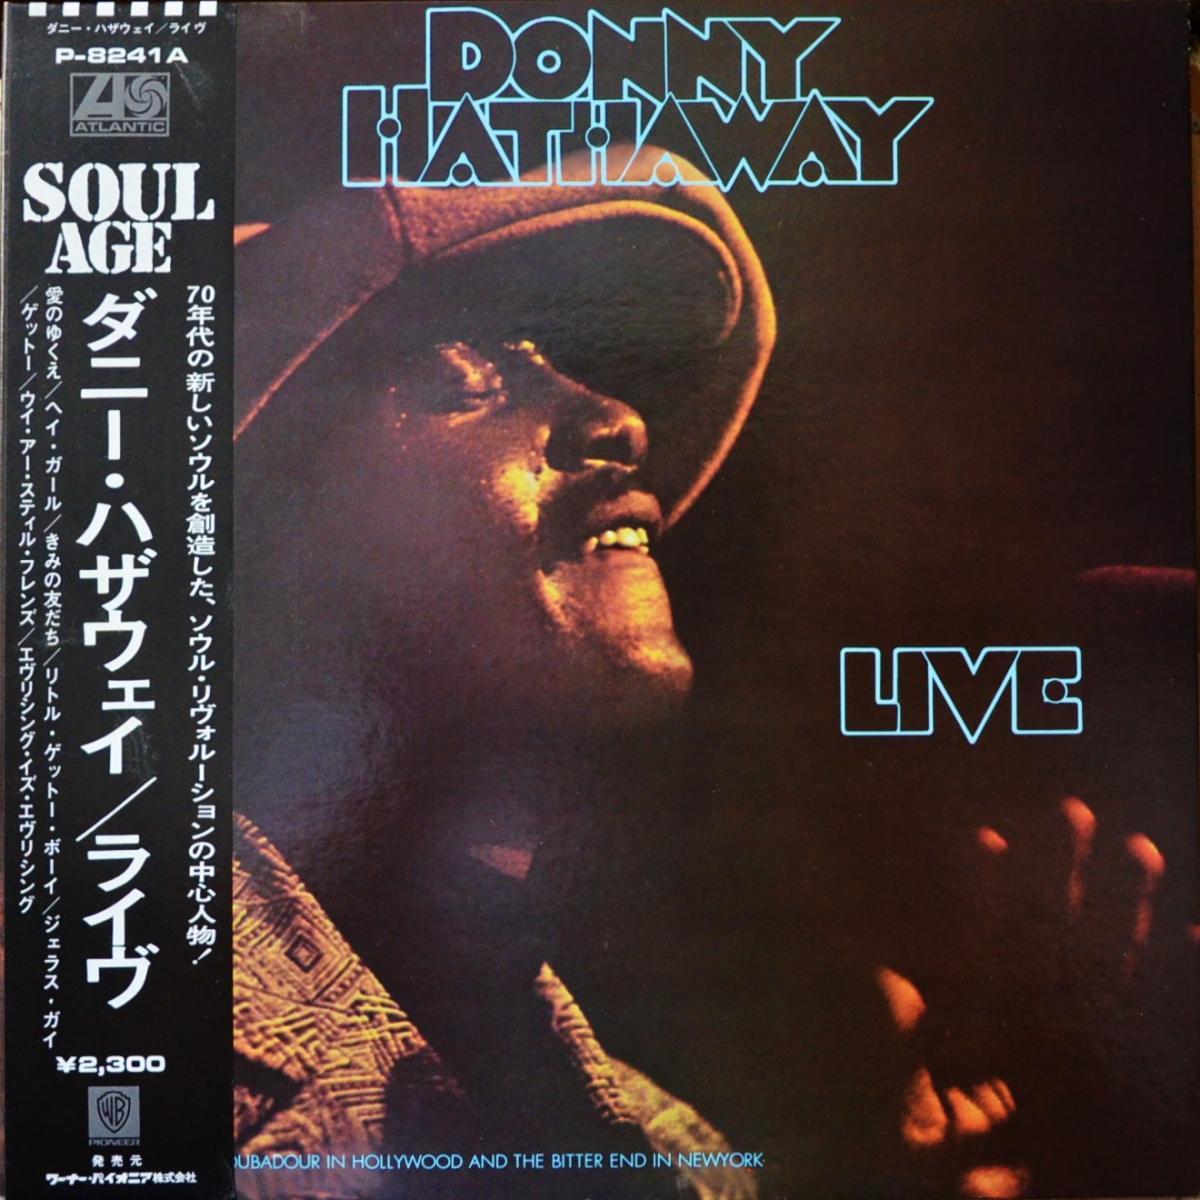 ダニー・ハザウェイ DONNY HATHAWAY / ライヴ LIVE (LP) - HIP TANK 